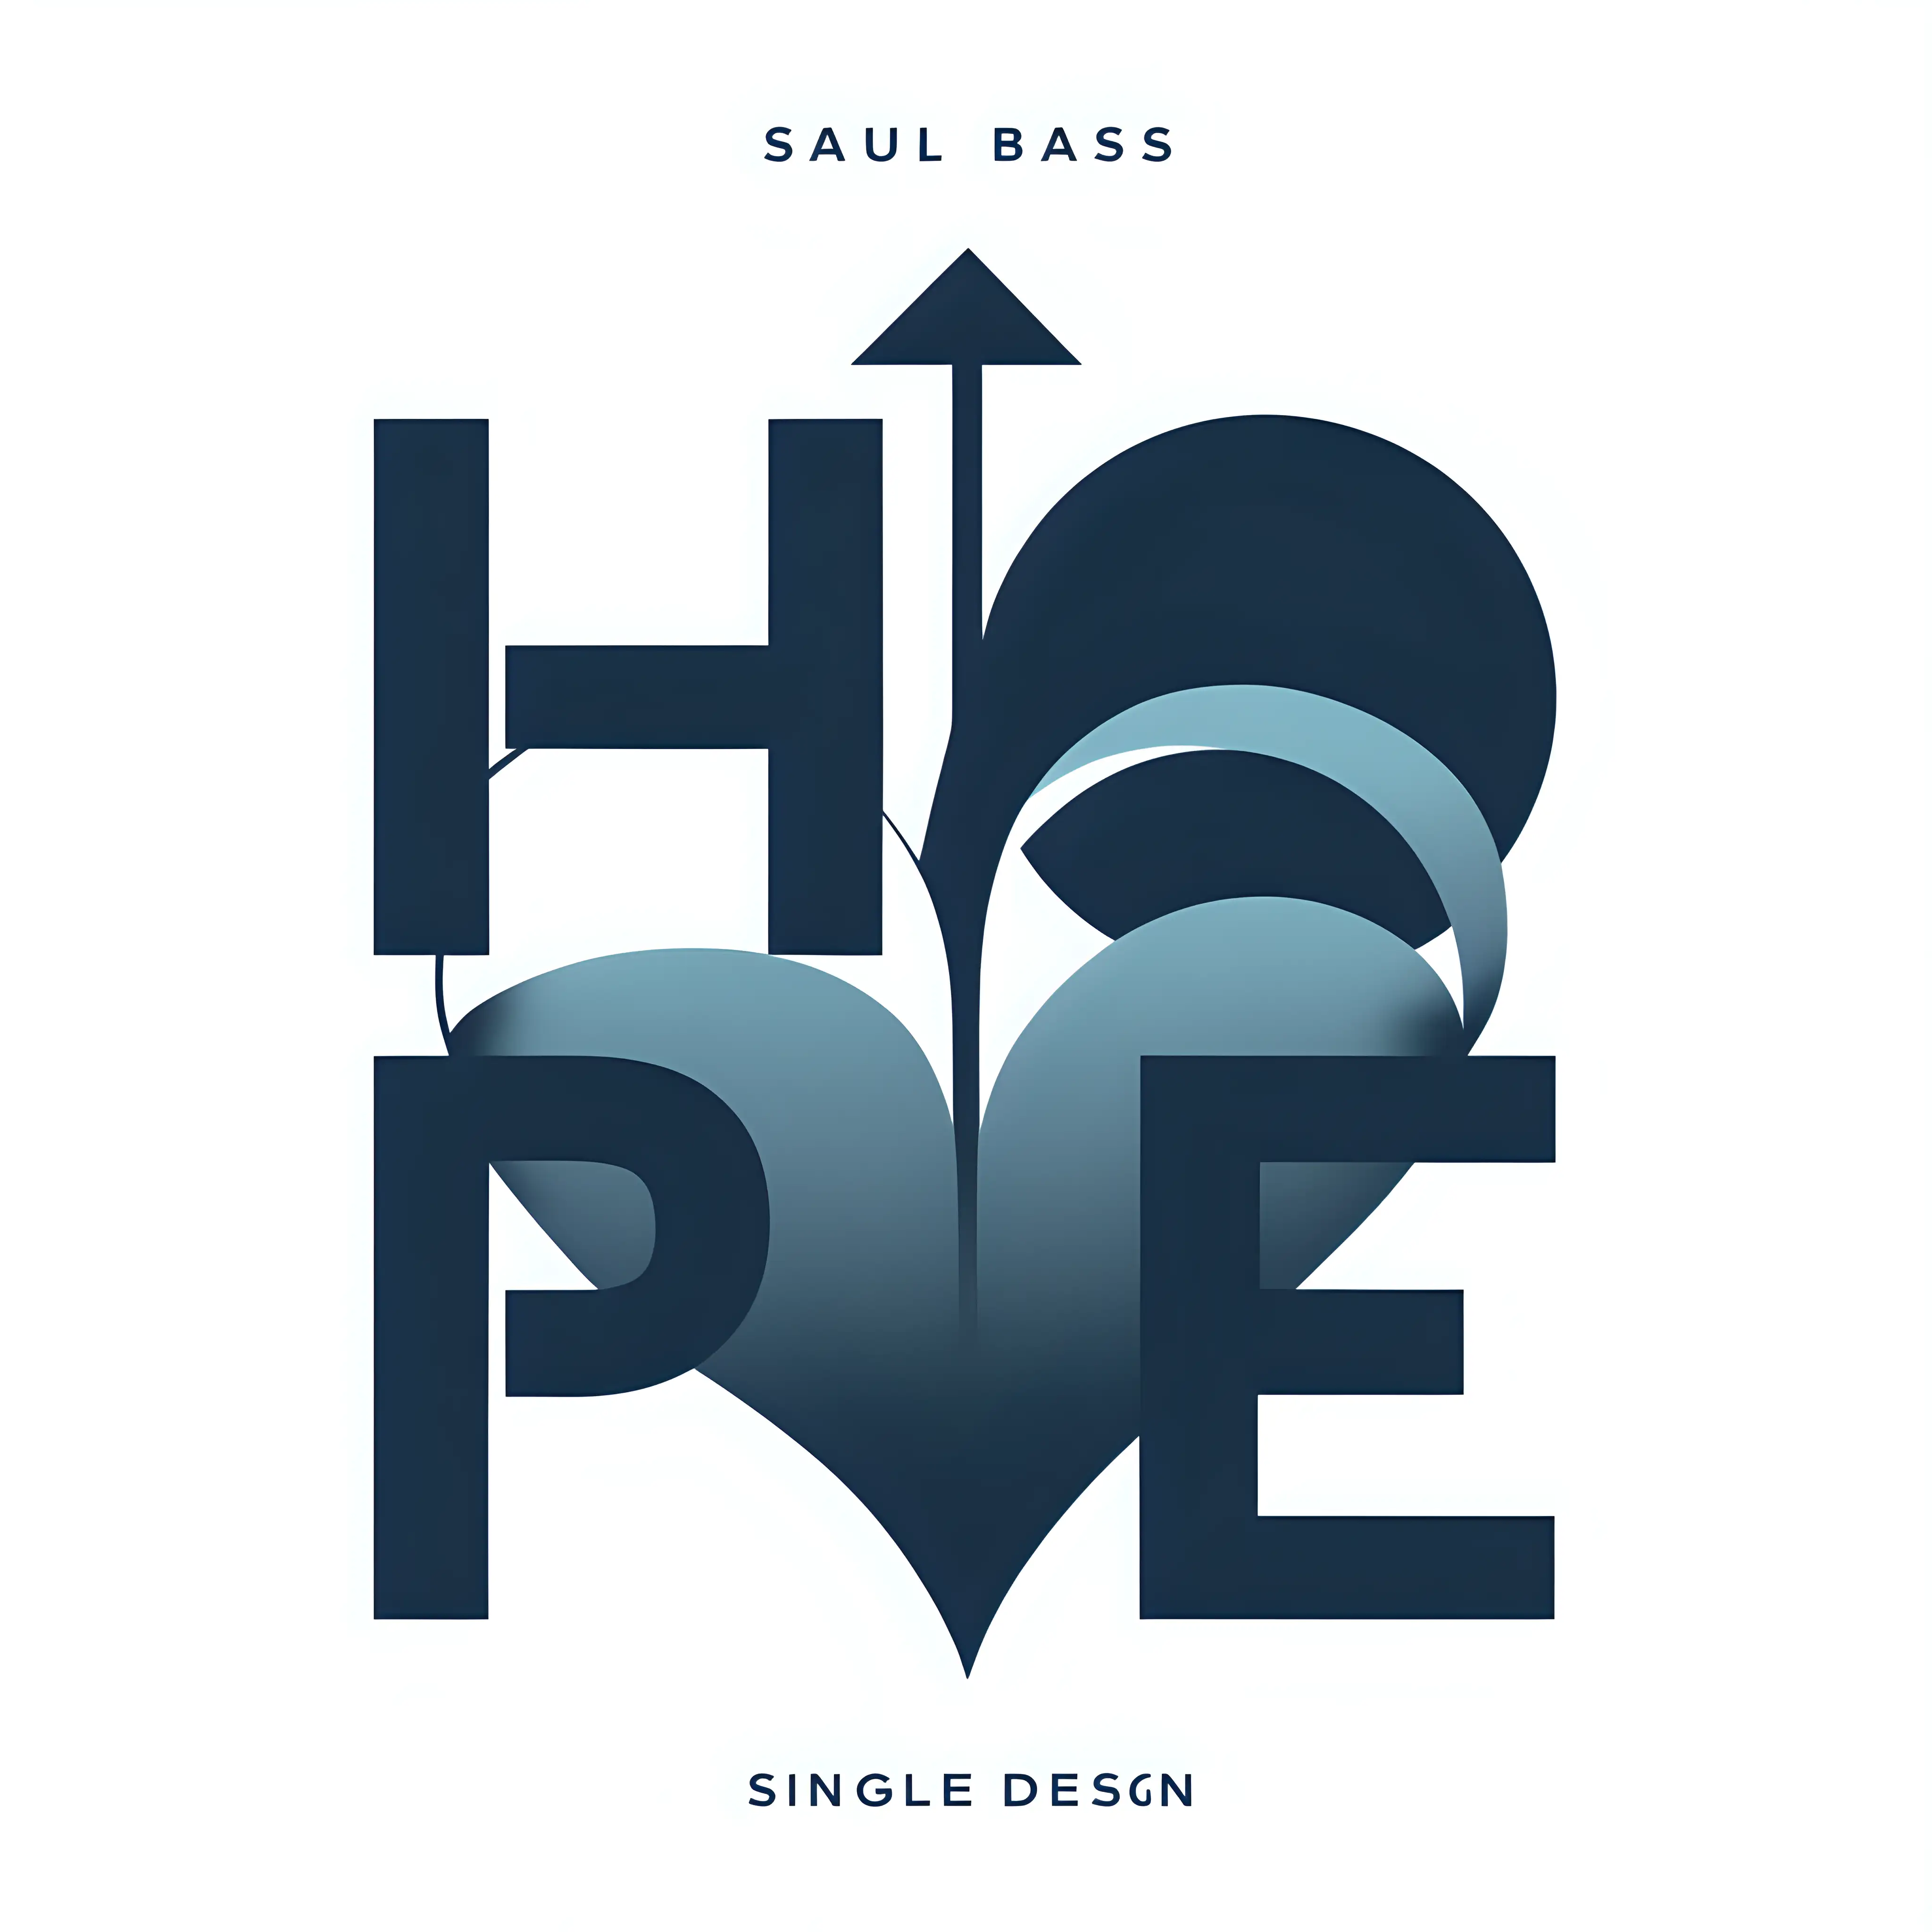 Prompt
Genera la portada de un single titulado 'Hope', con el estilo de Saul Bass.